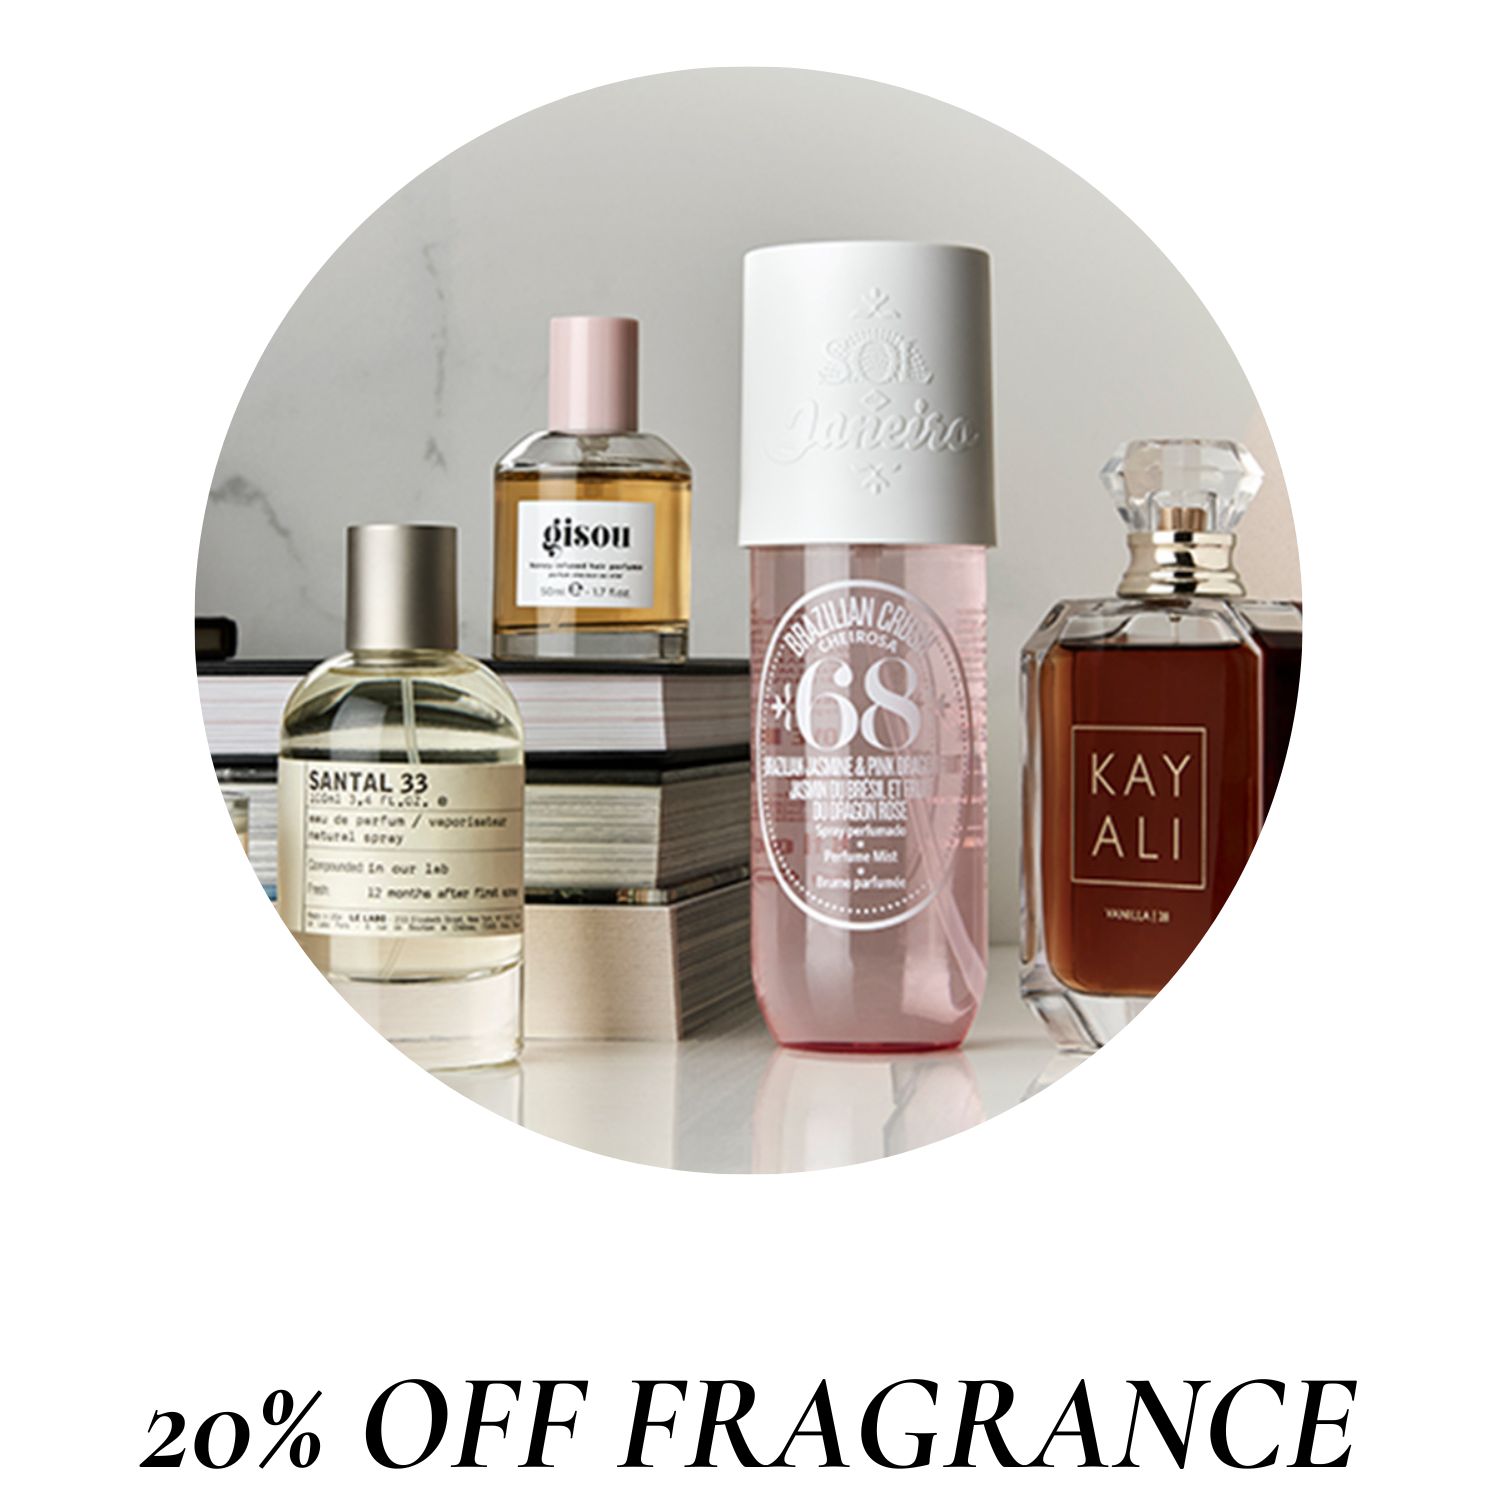 20% off fragrance